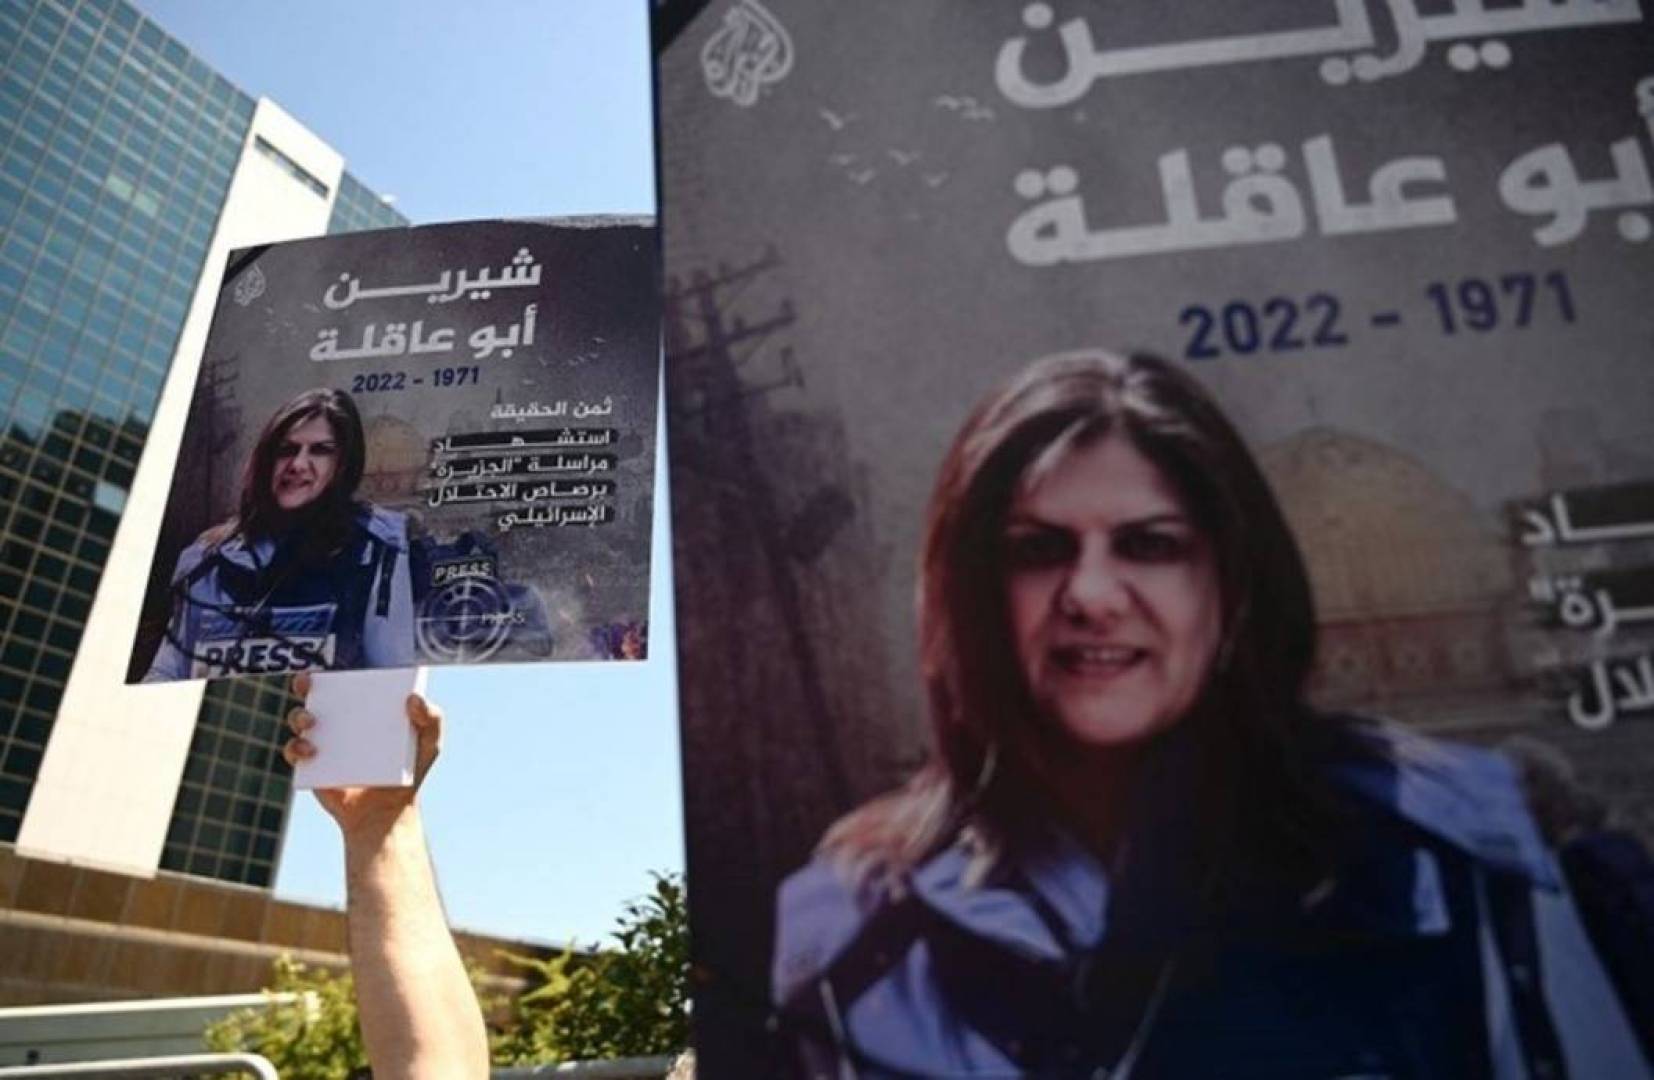 فيسبوك يخلد الشهيدة شيرين أبو عاقلة بعبارة “في قلوبنا”